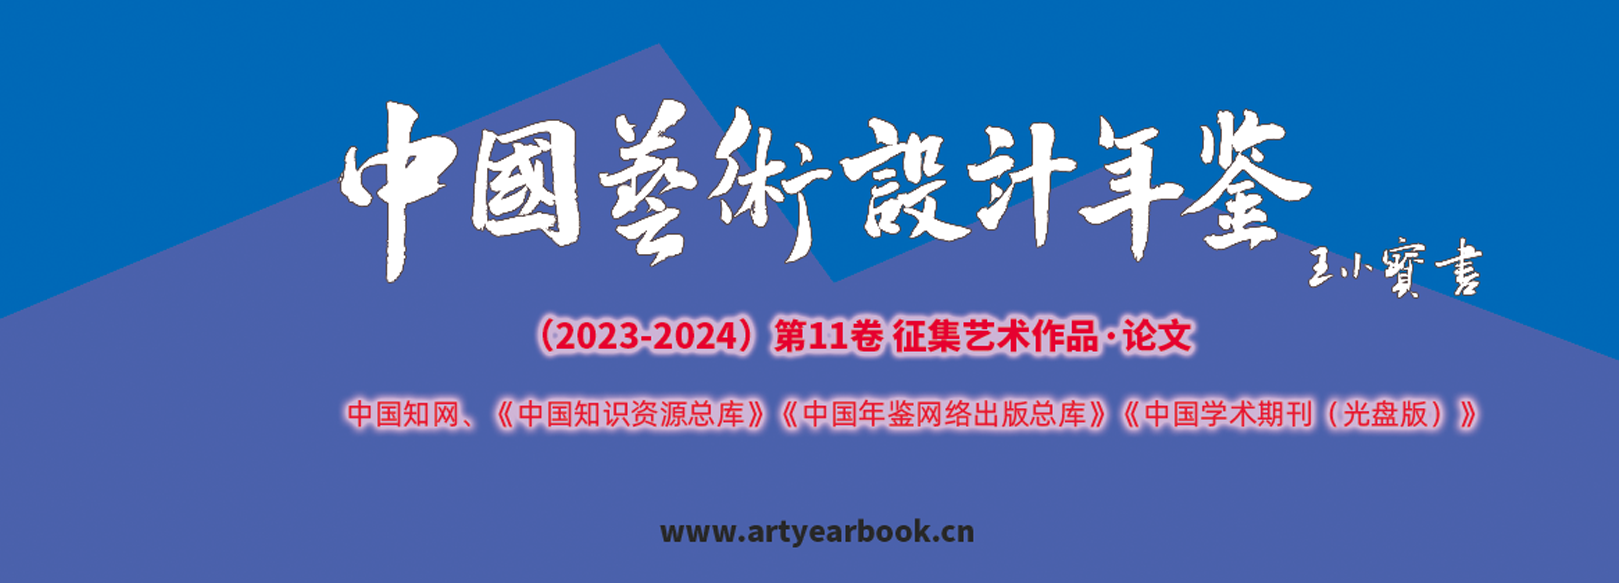 第11届《中国艺术设计年鉴》 暨艺术文献奖征集作品、论文